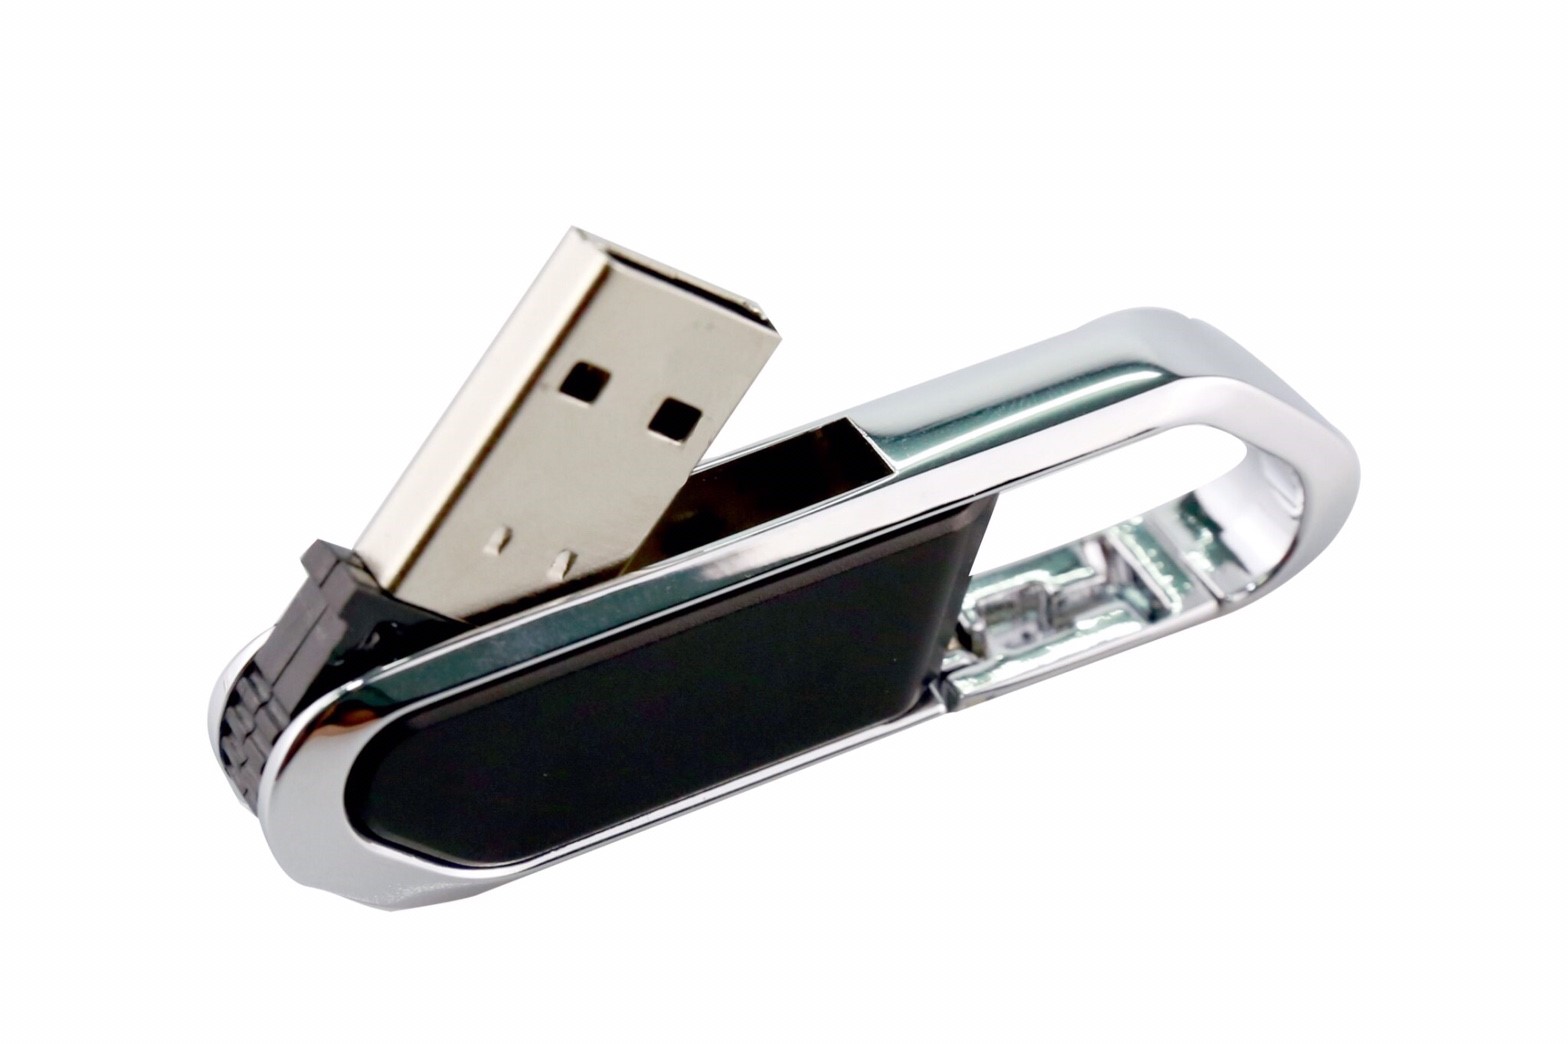 รับผลิตและจำหน่าย flash drive พรีเมี่ยมราคาพิเศษ สกรีนโลโก้ฟรี !! รูปที่ 1